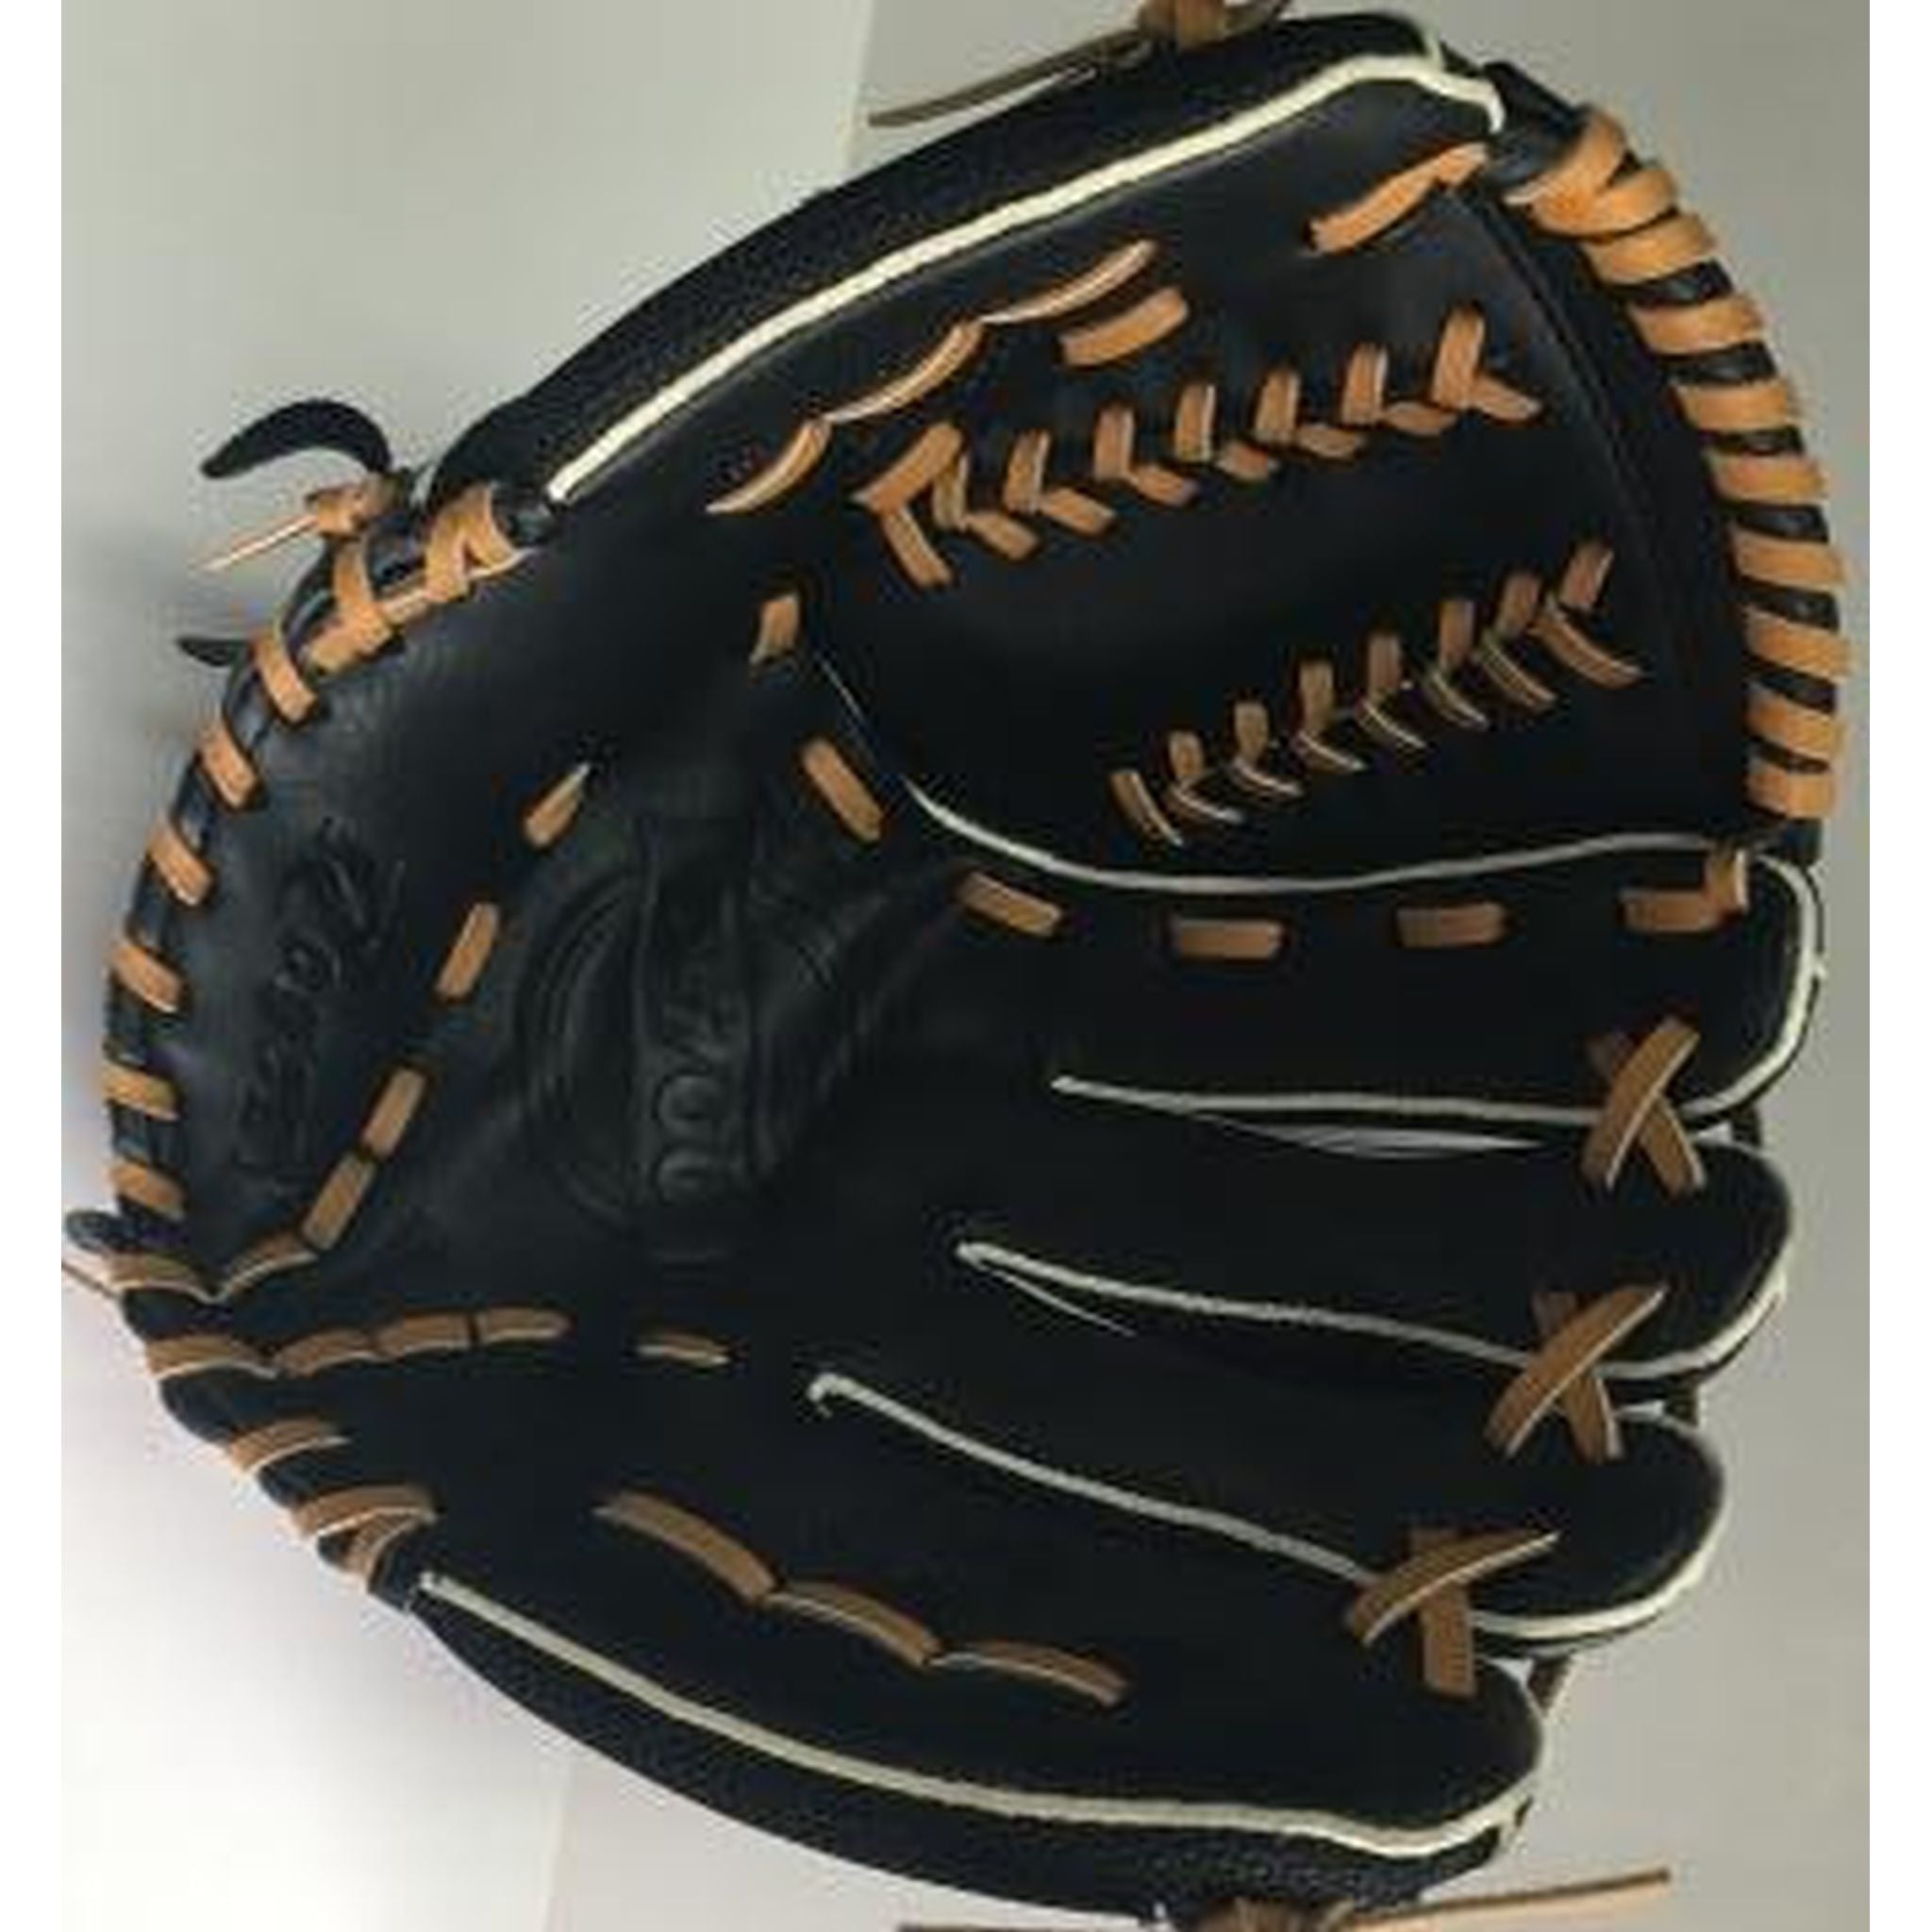 Regent D700 12.5-inch Baseball/Softball Glove